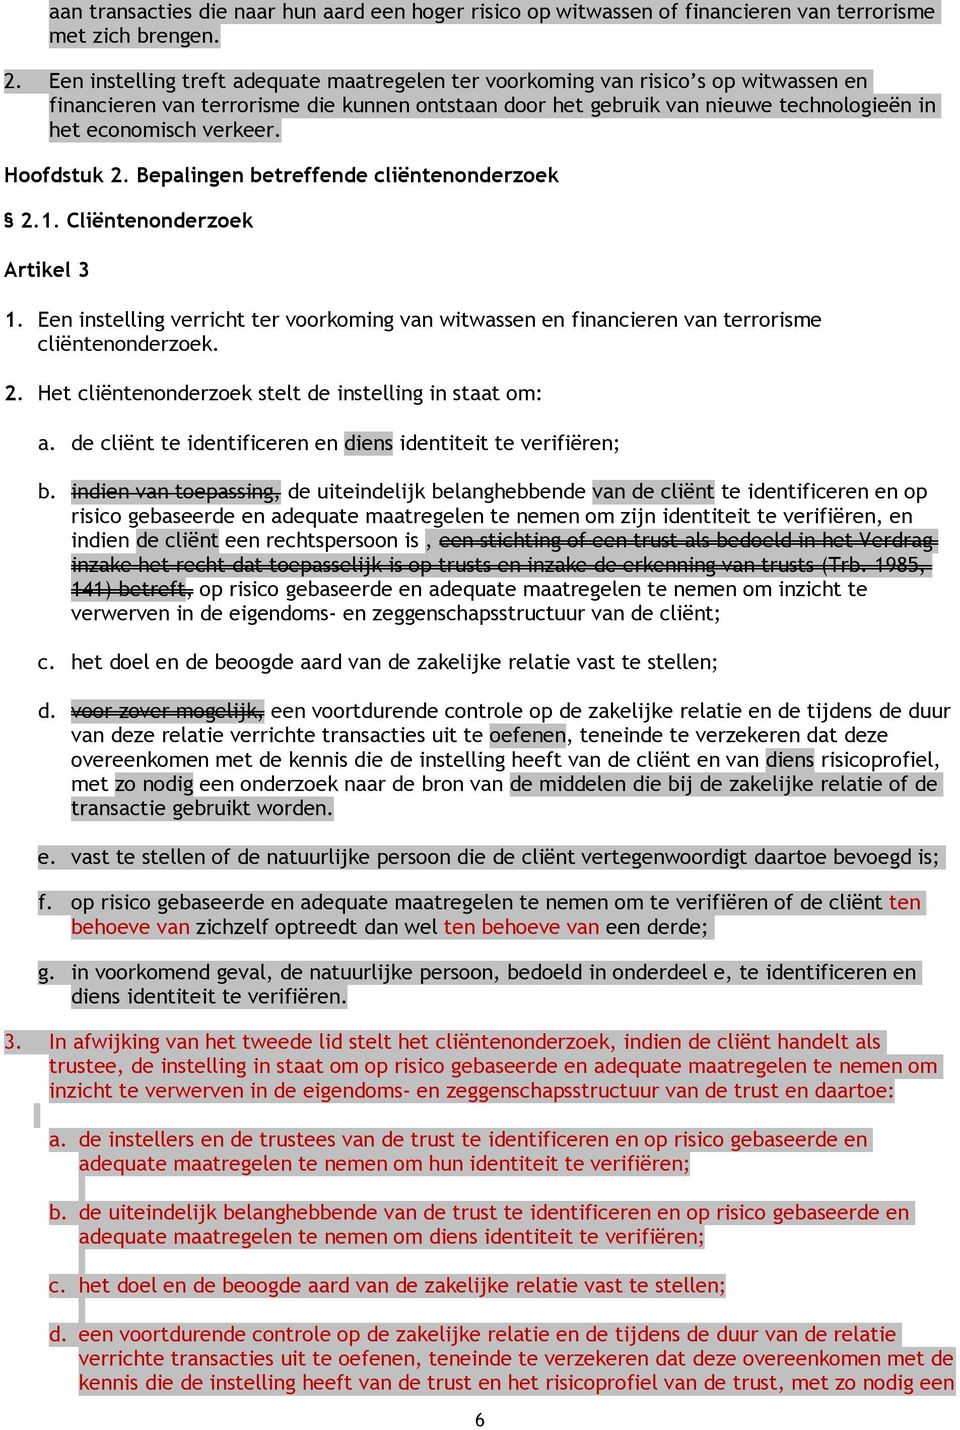 verkeer. Hoofdstuk 2. Bepalingen betreffende cliëntenonderzoek 2.1. Cliëntenonderzoek Artikel 3 1. Een instelling verricht ter voorkoming van witwassen en financieren van terrorisme cliëntenonderzoek.